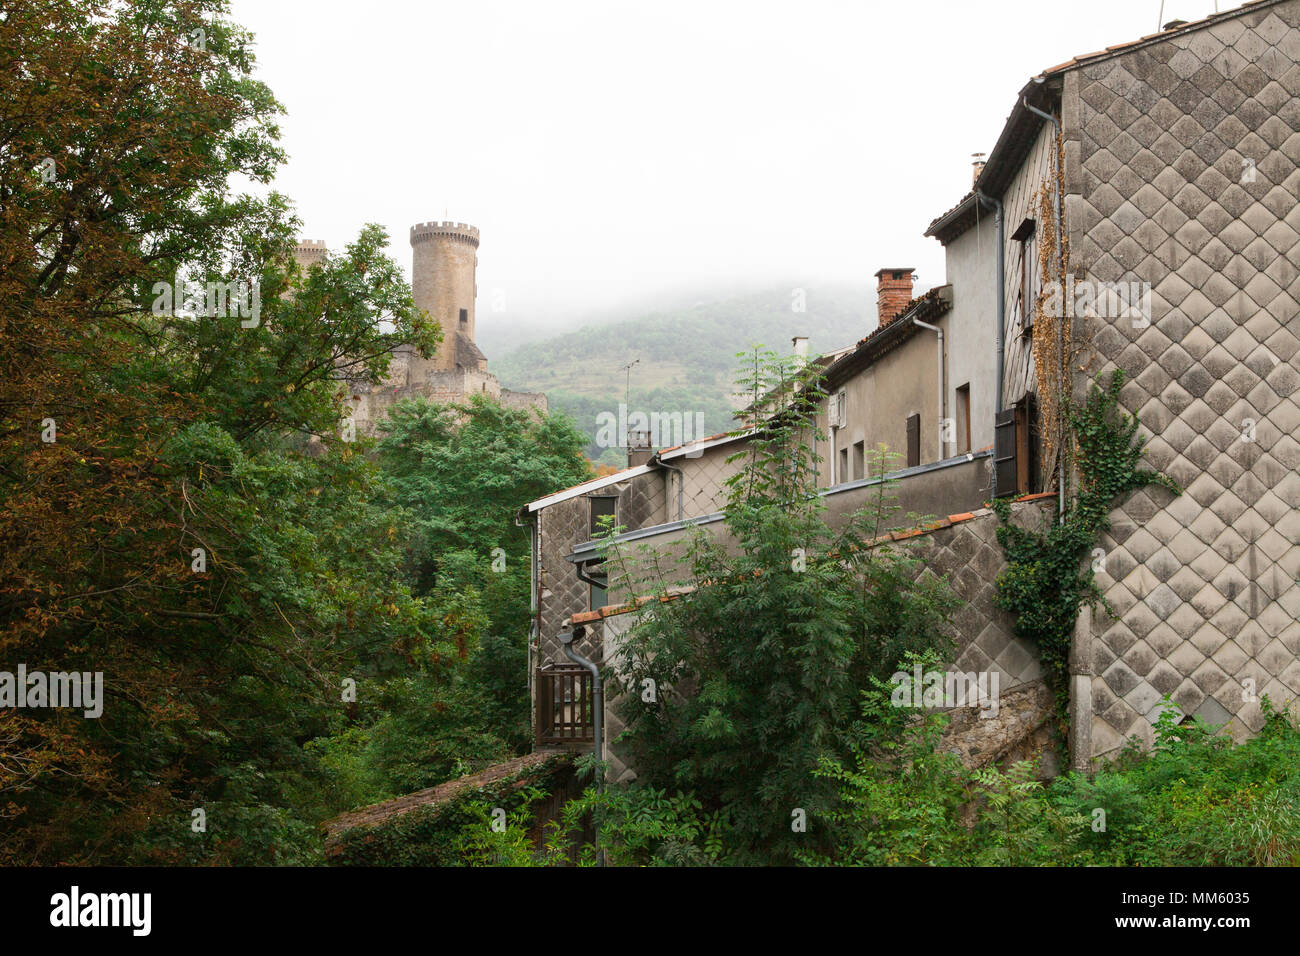 Photo du château qui domine la ville de Foix, en Ariège, France. Ce château médiéval est nommé en français : Le château de Foix. Banque D'Images